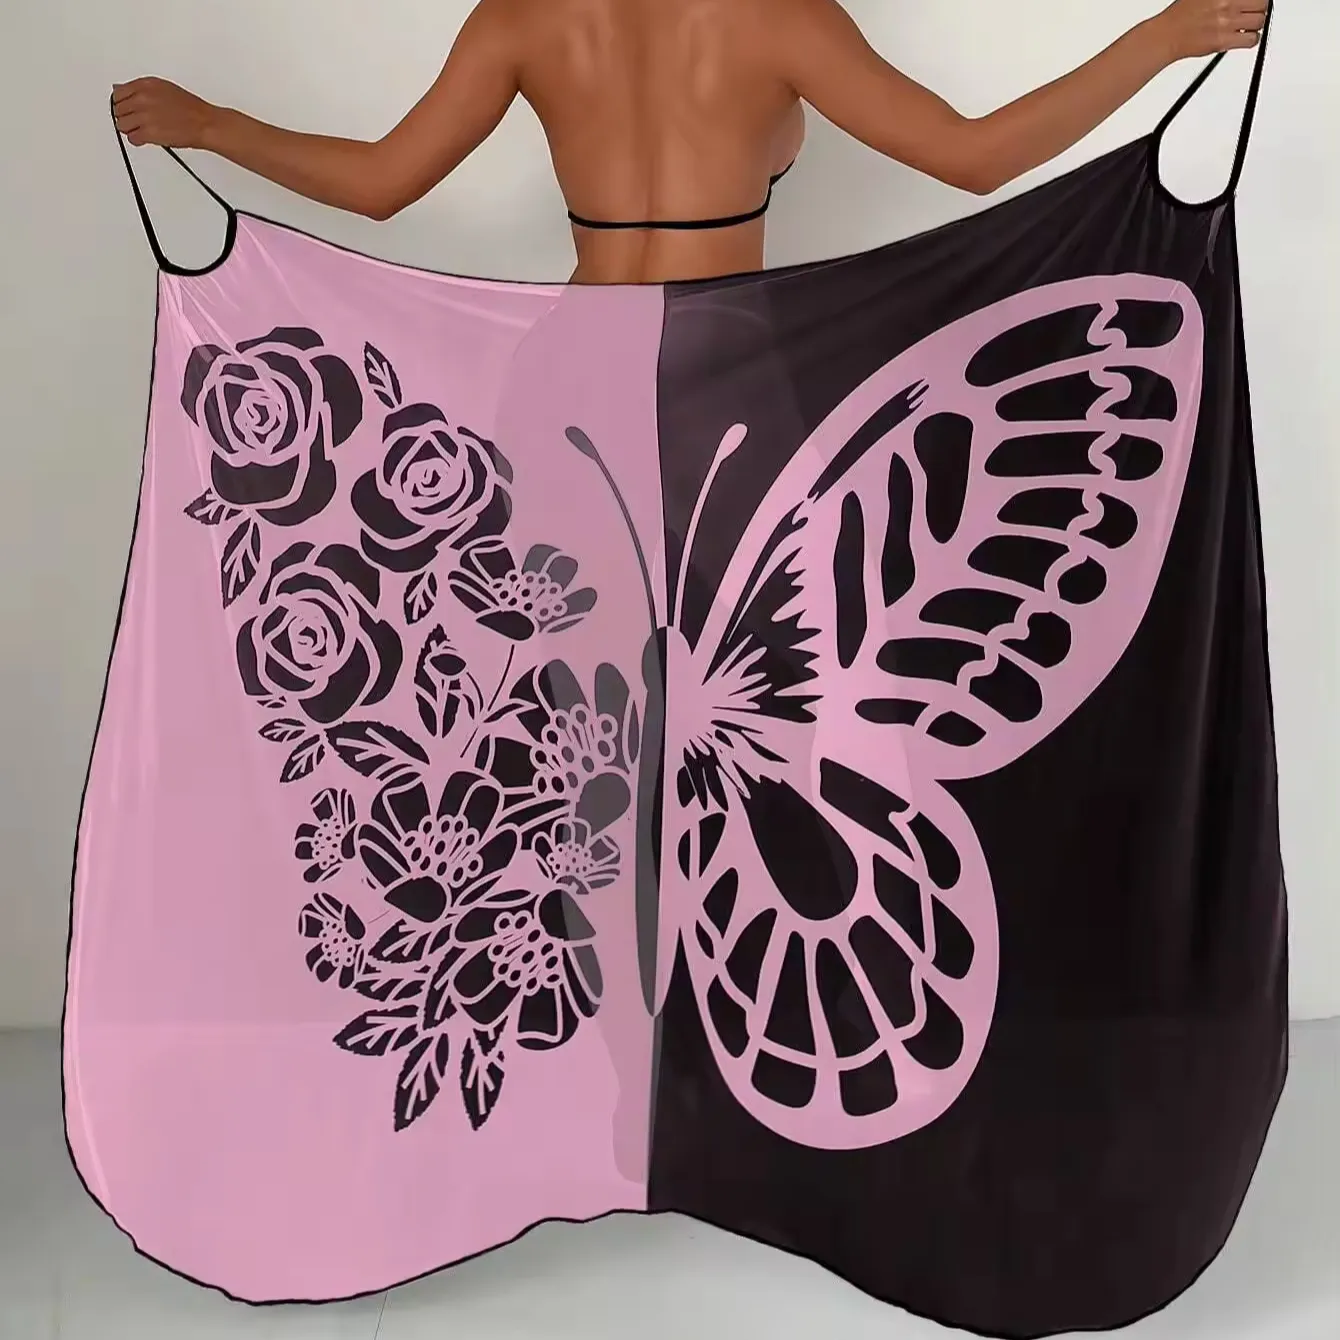 C одежда с бабочкой дизайн сетчатый купальник Женская Сексуальная Пляжная одежда Купальные костюмы